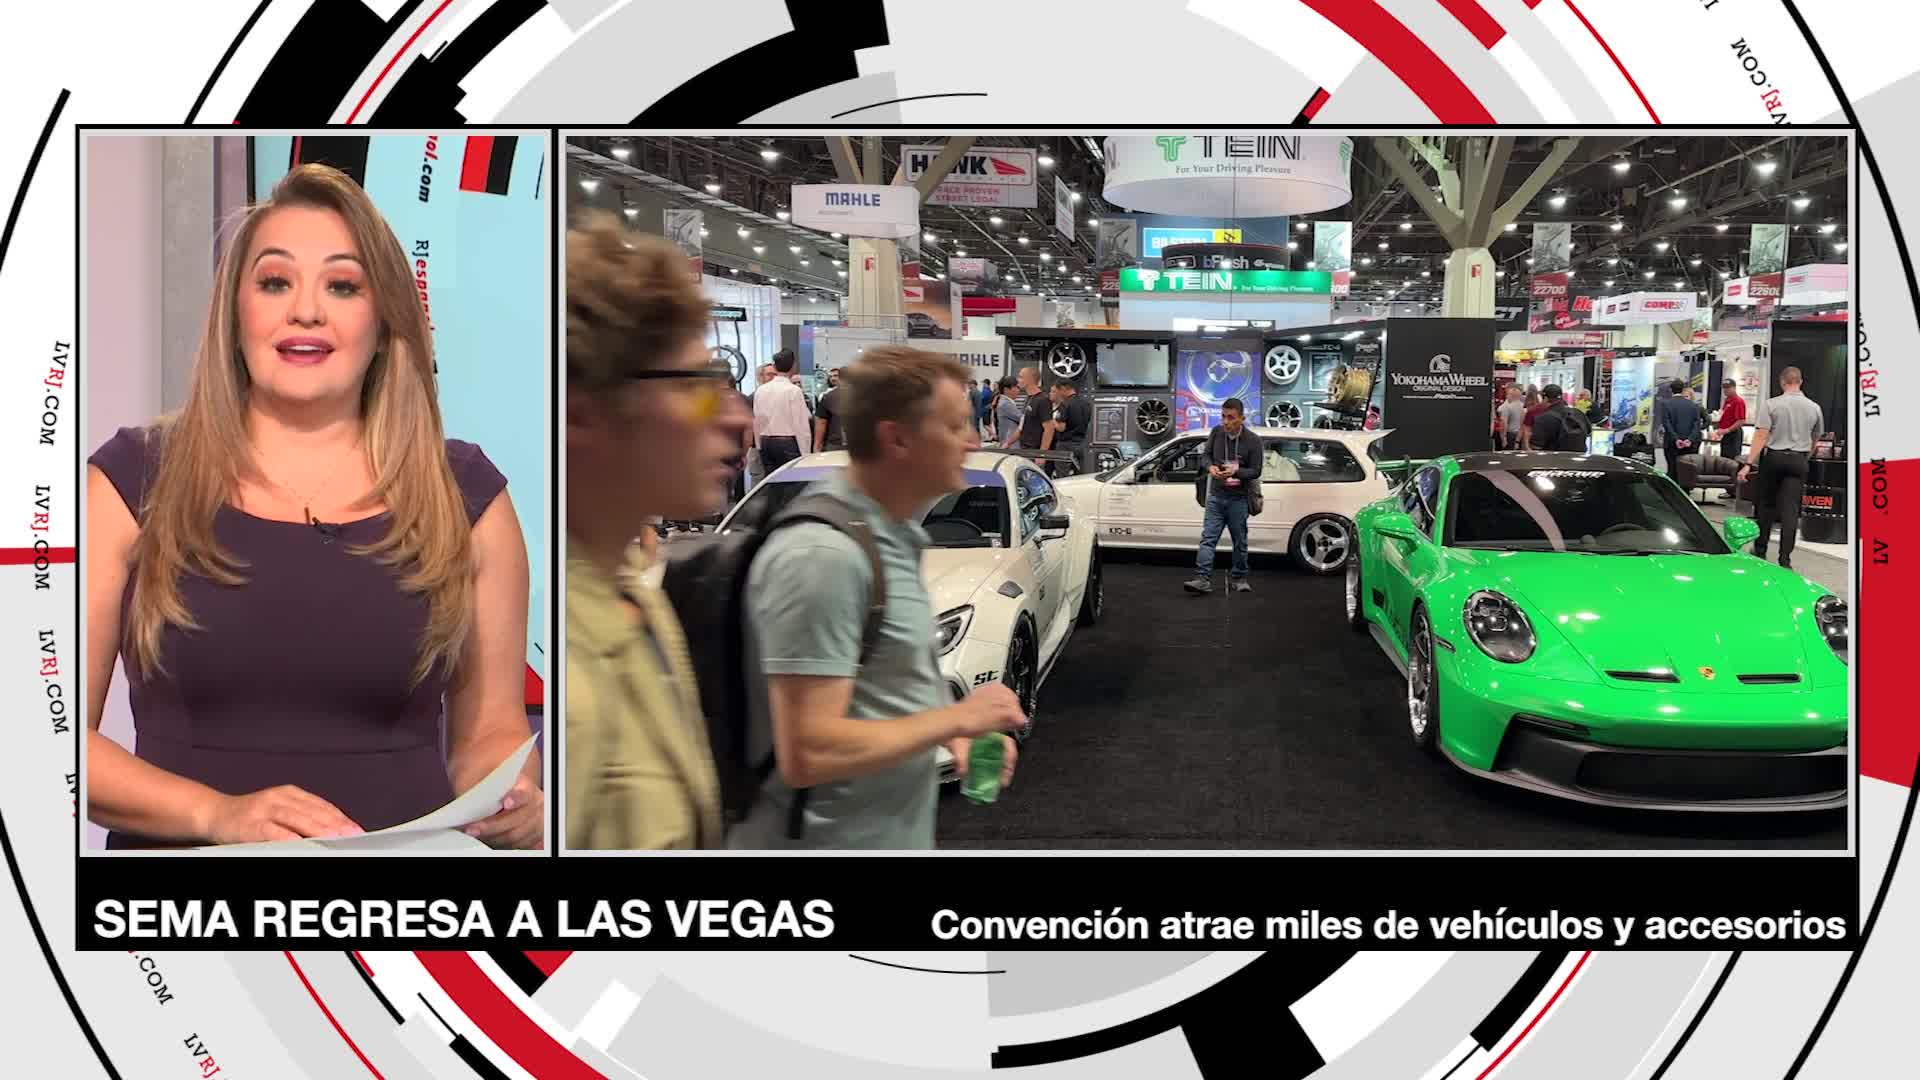 Feria comercial expone miles de vehículos en Las Vegas